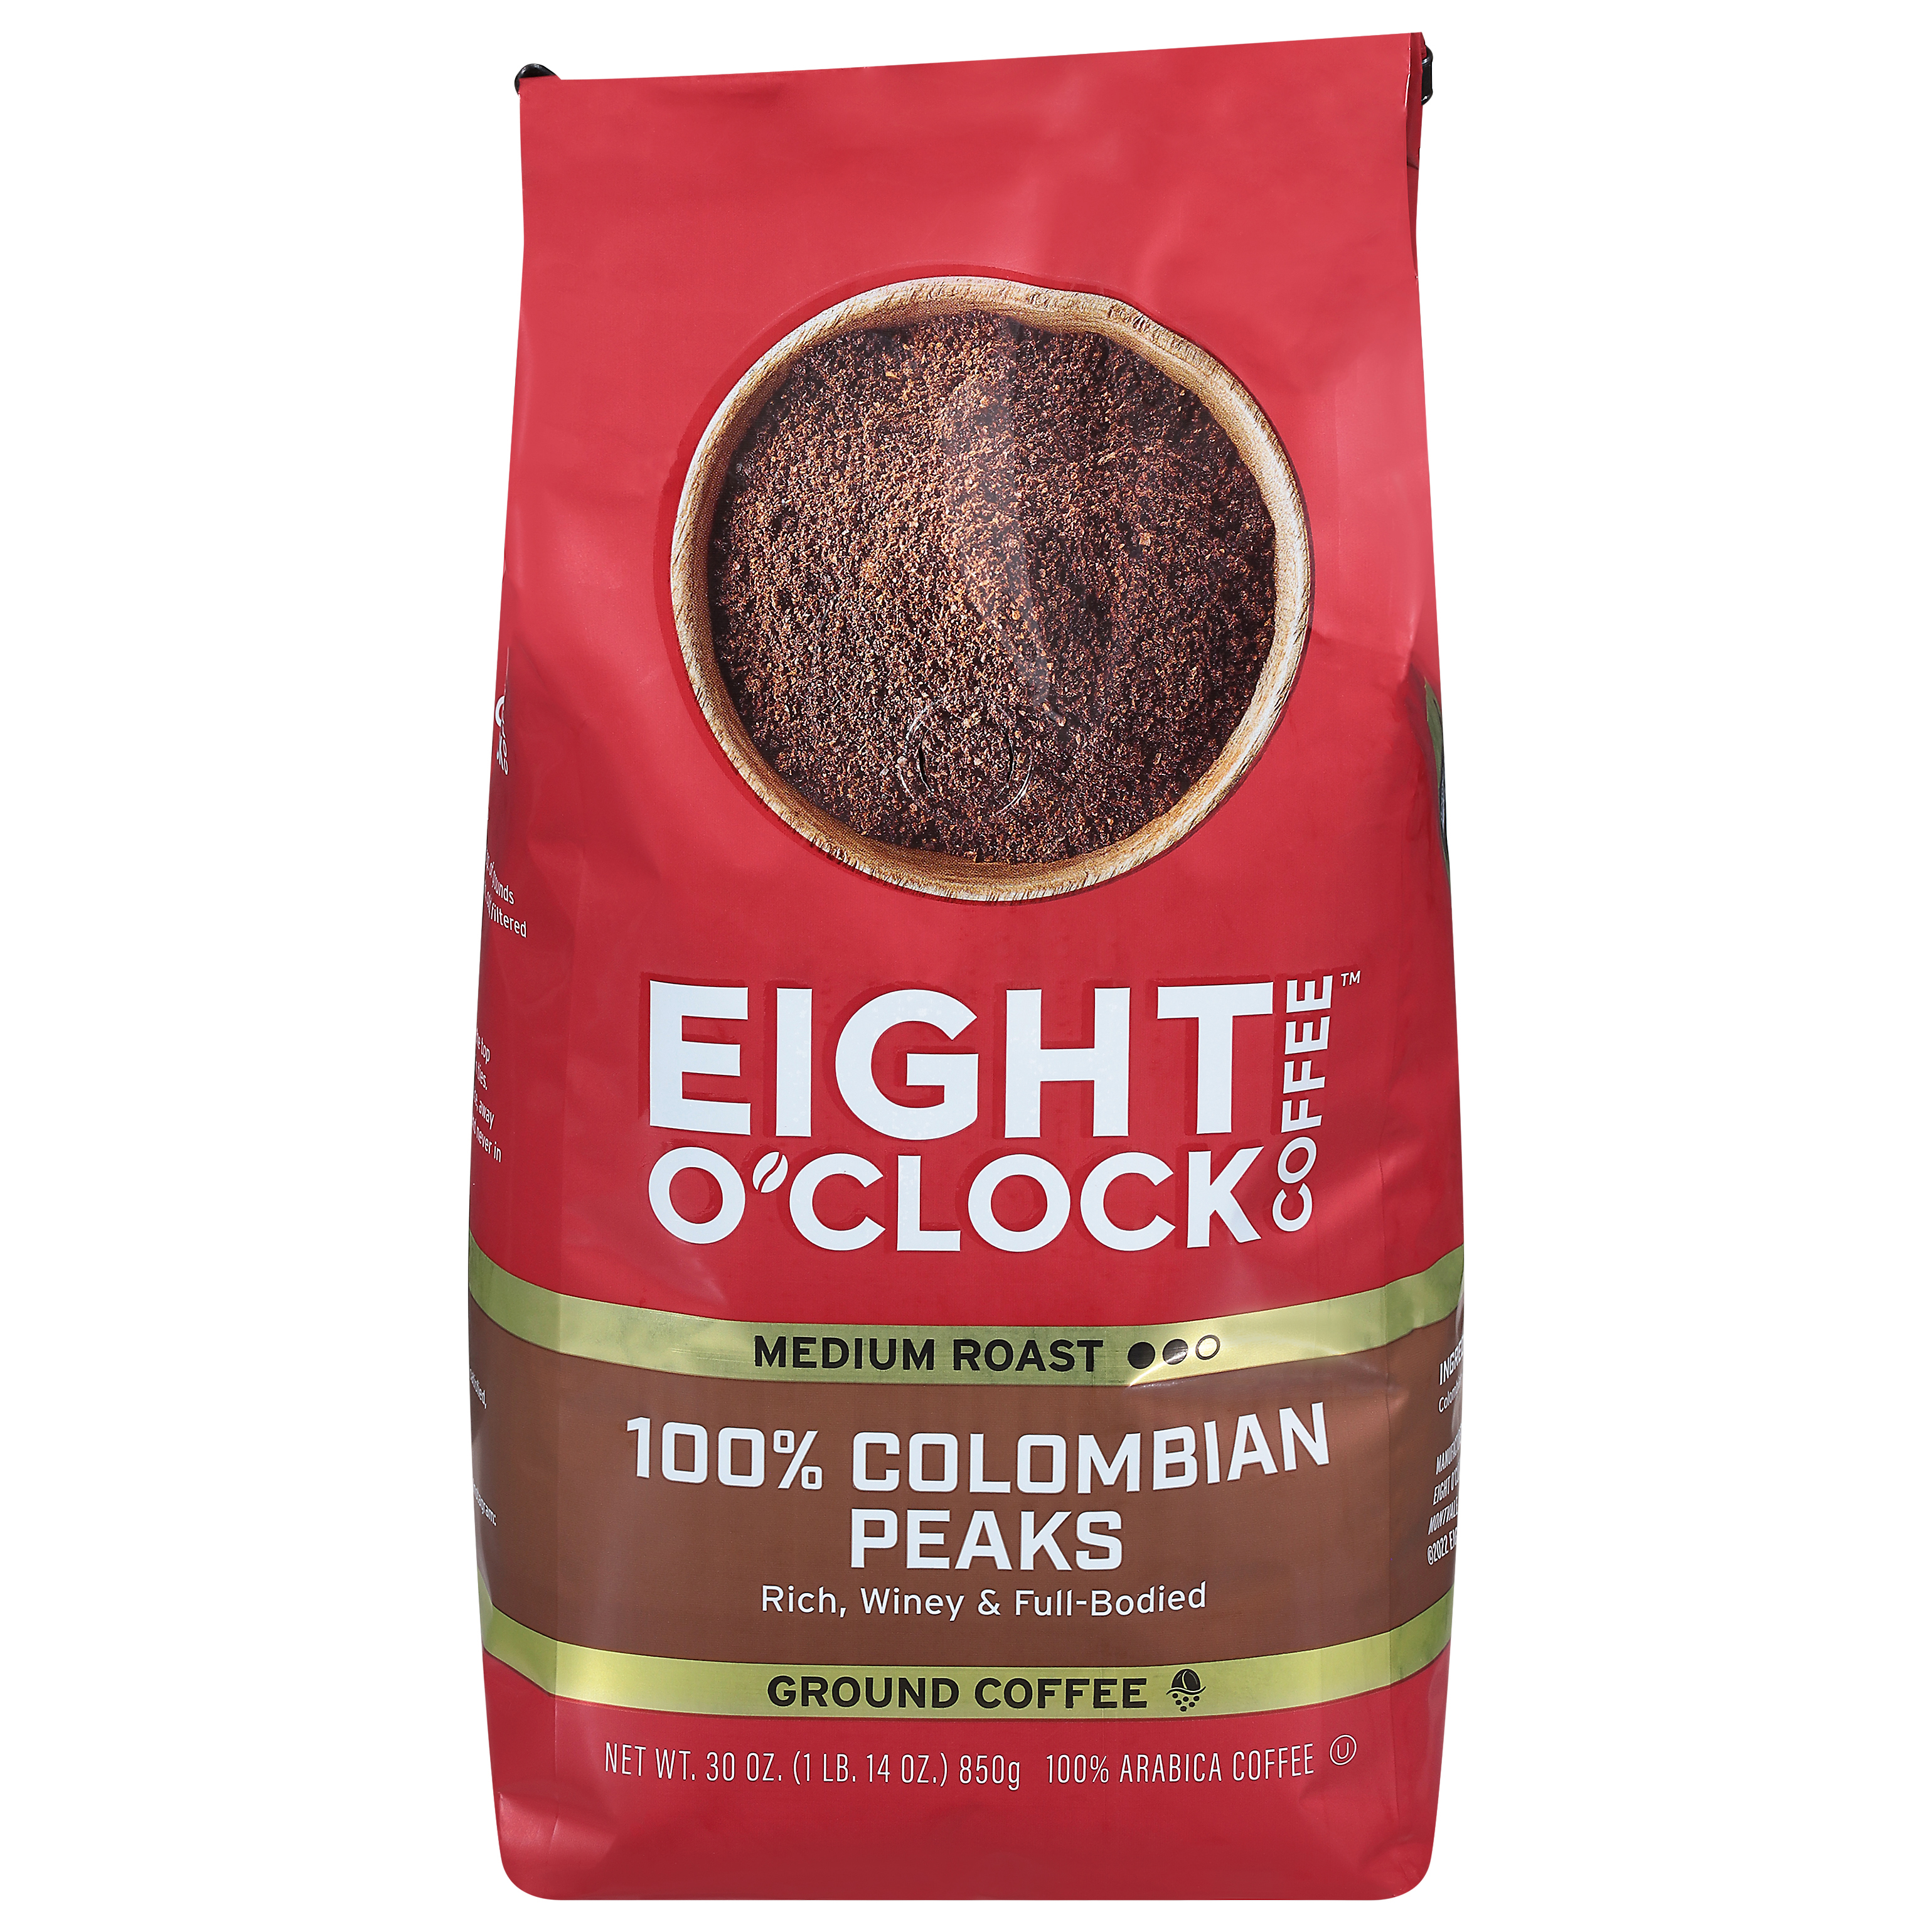 Eight O'Clock 100% Colombian Peaks Medium Roast Ground Coffee, 30 Oz, Bag - image 1 of 3